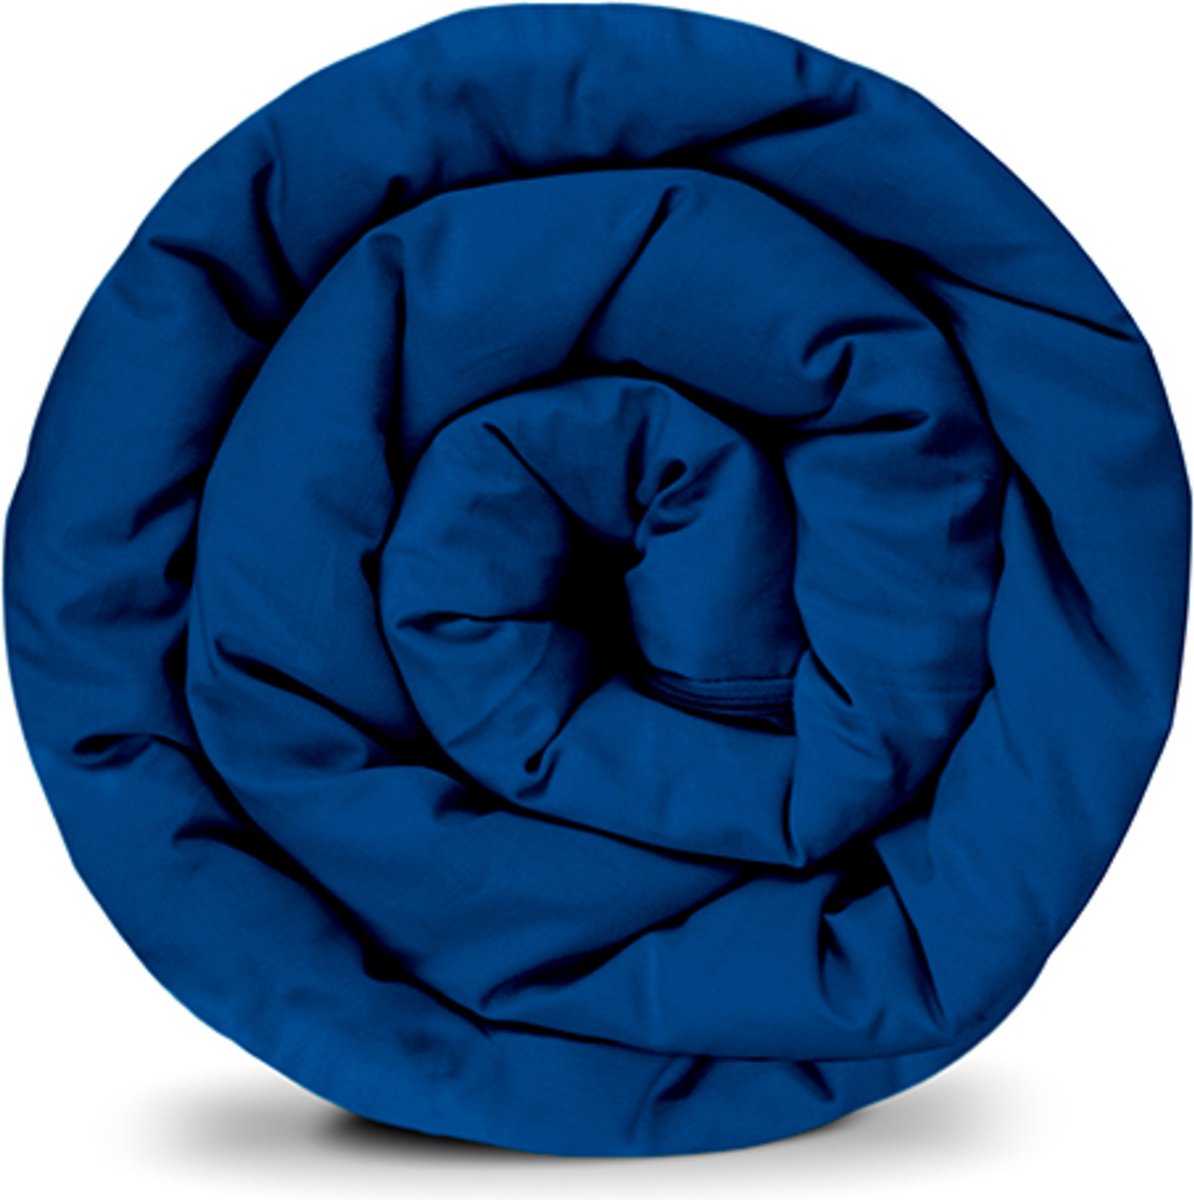 BALANCE weighted blanket cover in blauw katoen ritssysteem zomerhoes voor volwassenen/adolescenten voor een betere slaap afmeting: 150x220 cm